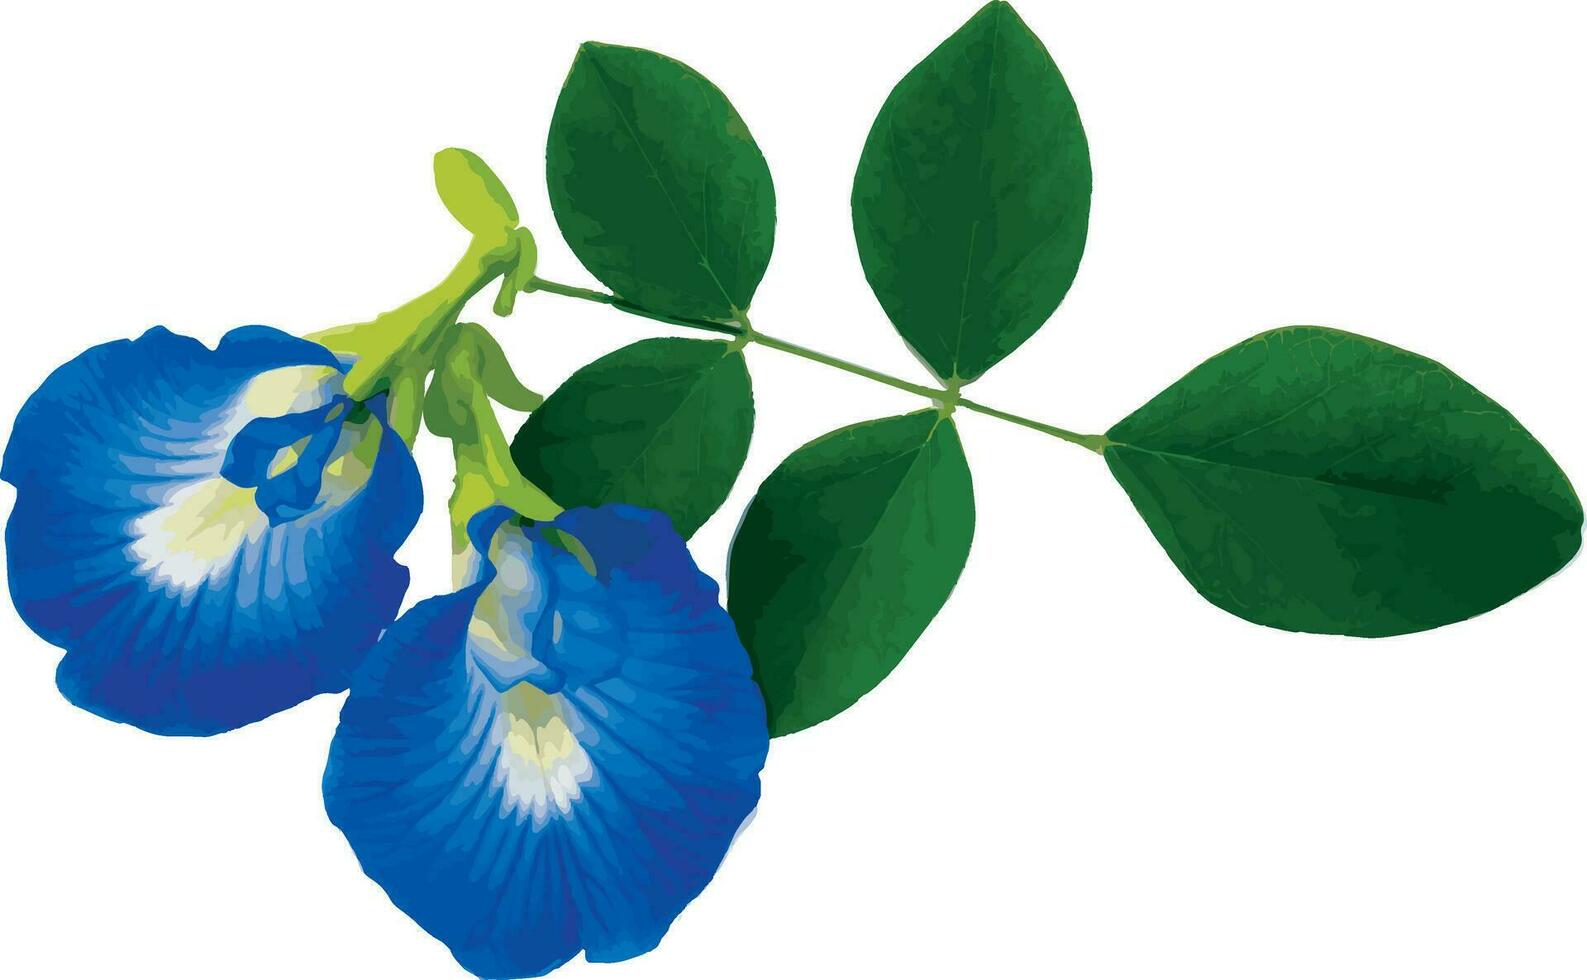 abstrakt av blå ärta blomma eller fjäril ärta blomma på vit bakgrund. vetenskaplig namn Clitoria tematea vektor